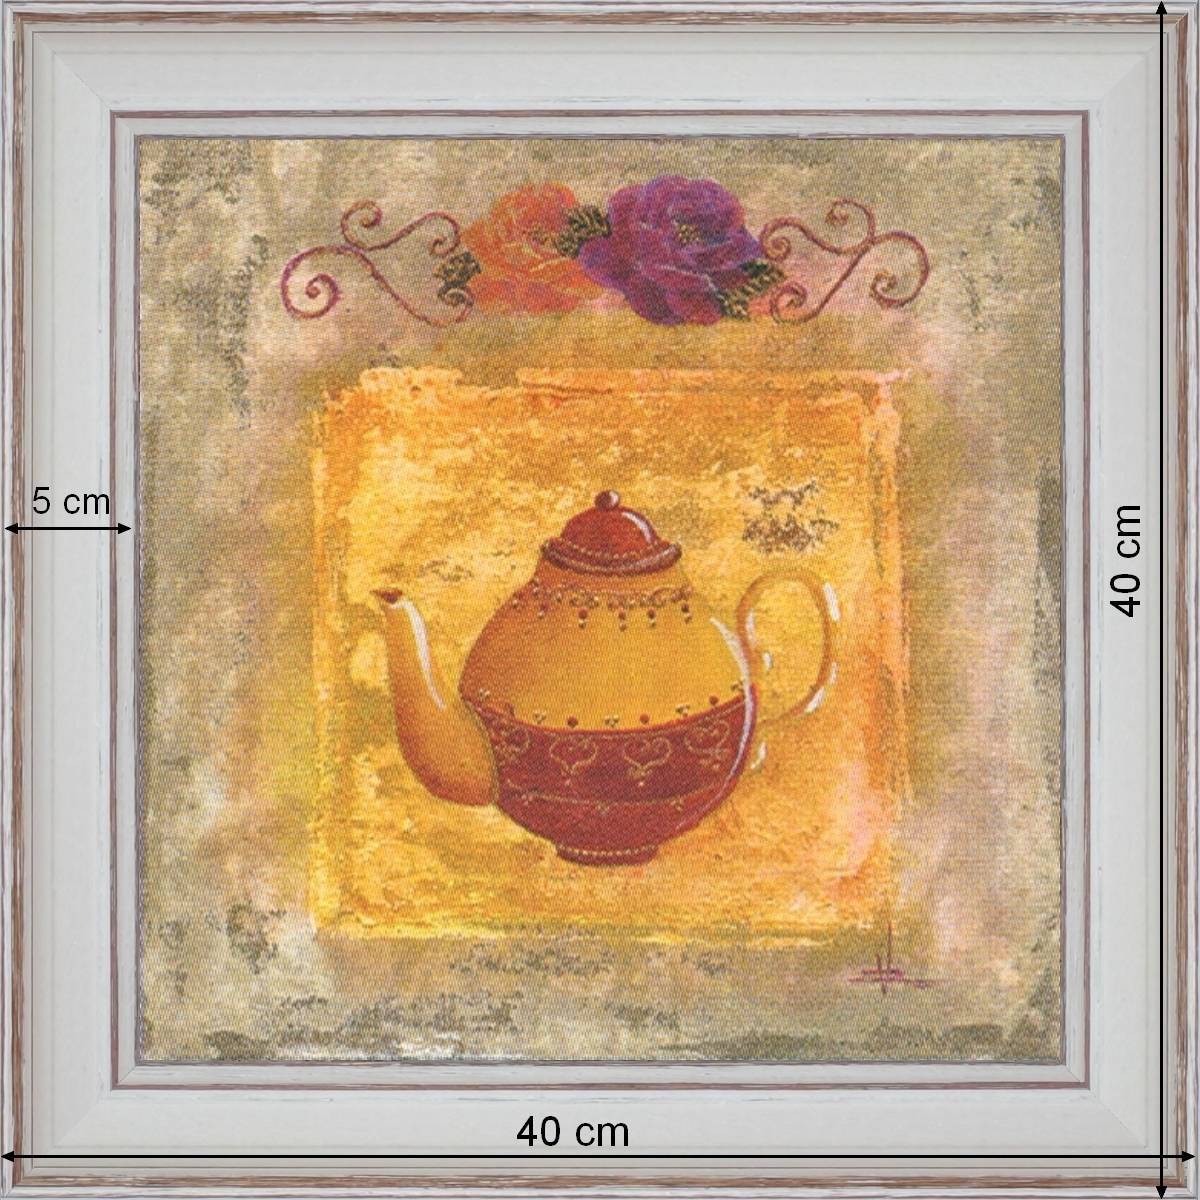 The teapot - dimensions 40 x 40 cm